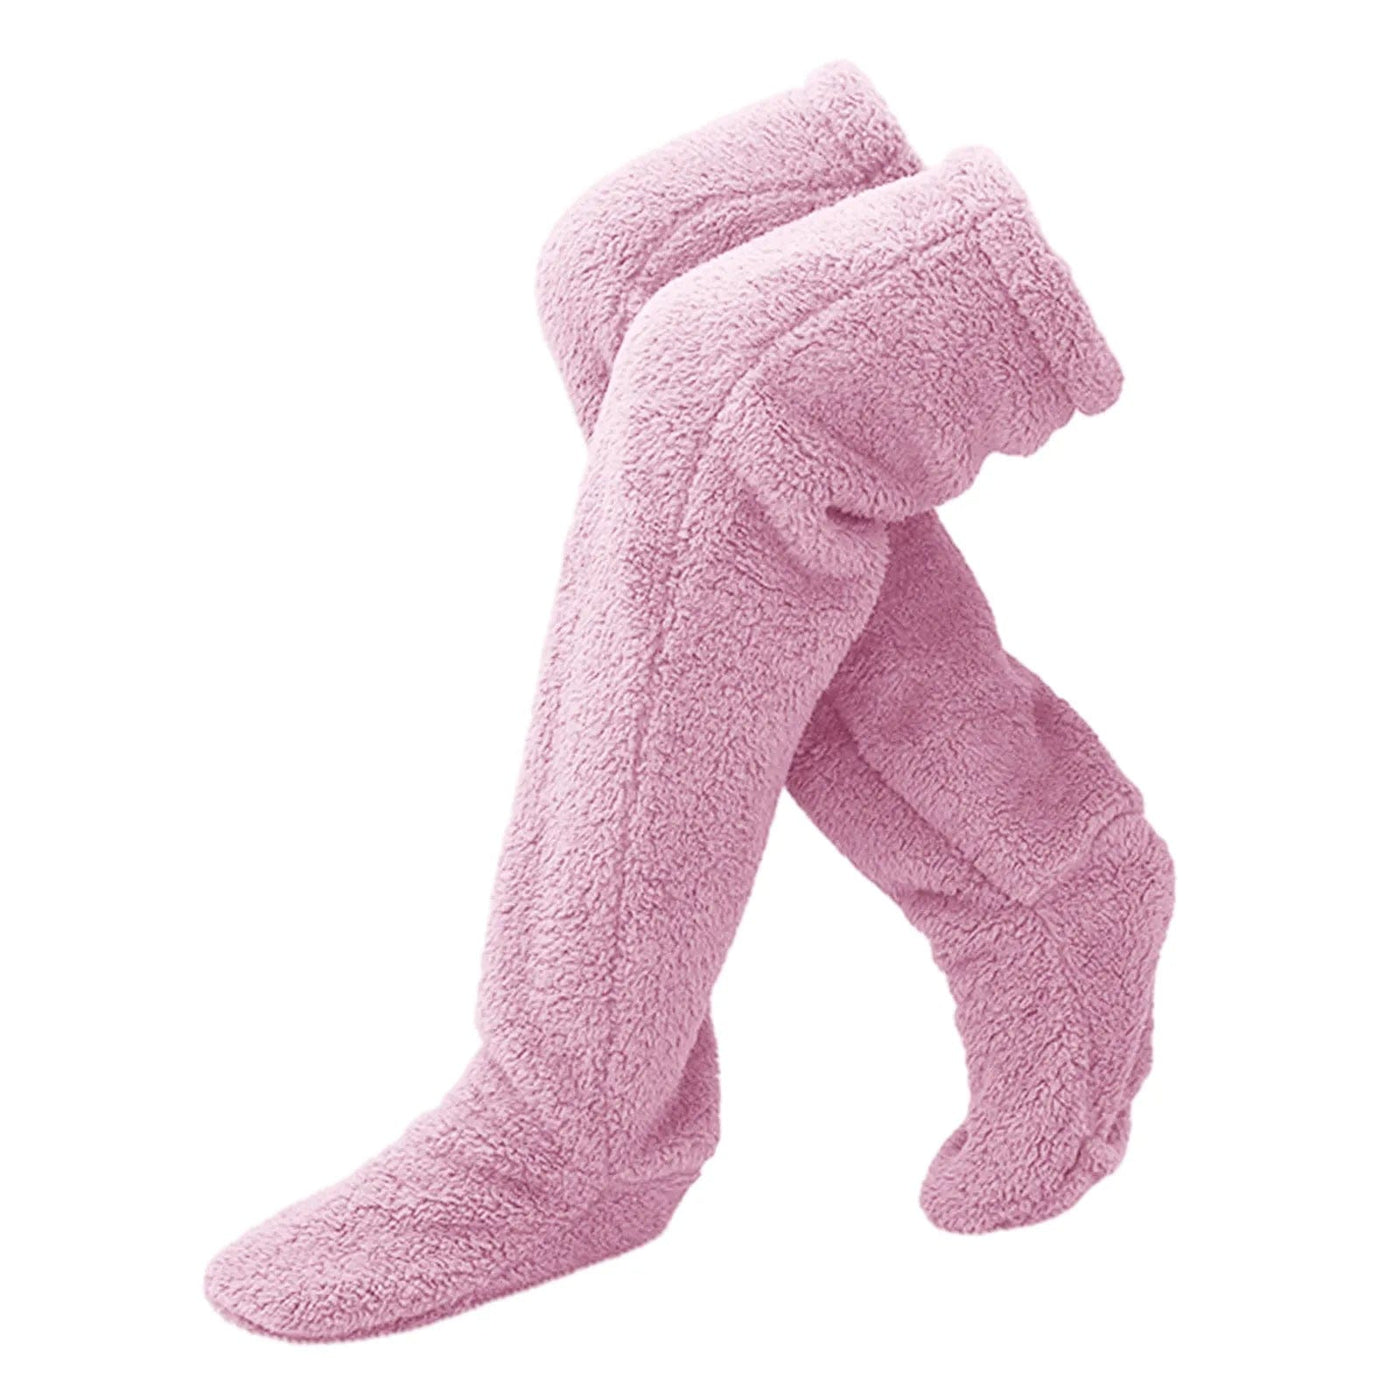 wickedafstore Purple / One Size Cozy Legs Sock Slippers